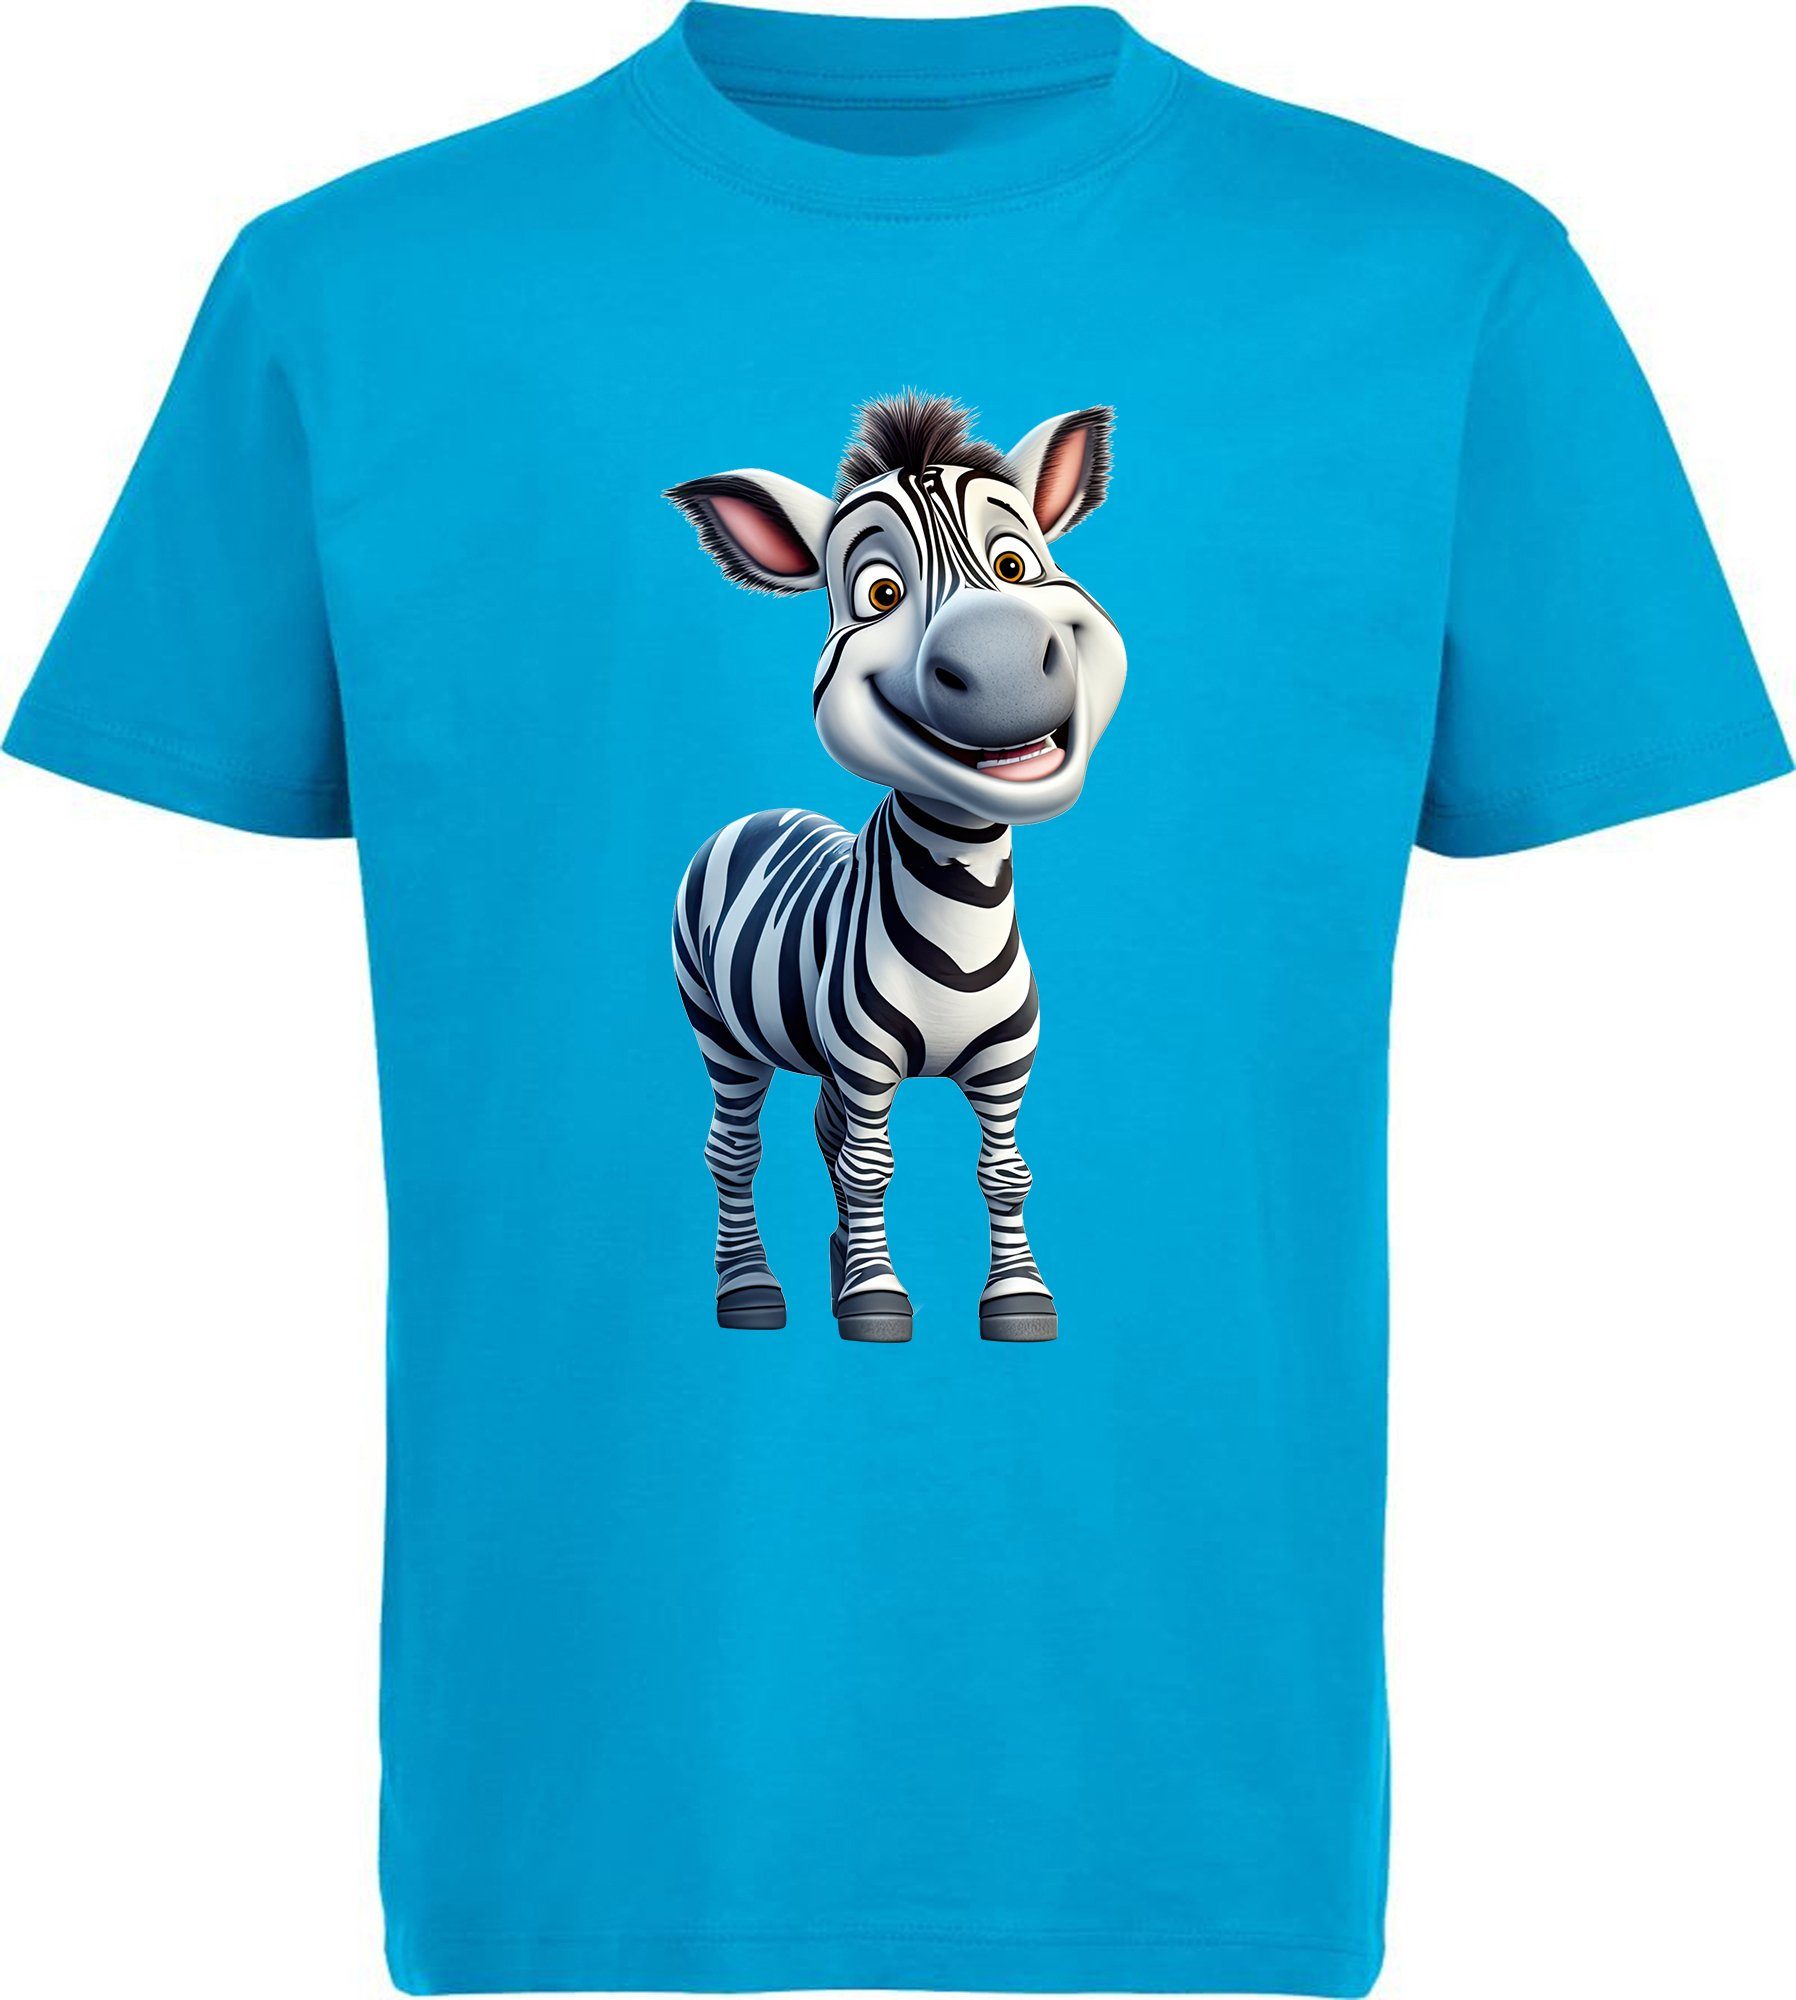 MyDesign24 T-Shirt Kinder Wildtier Shirt Aufdruck, aqua mit Zebra Print i280 Baby bedruckt blau - Baumwollshirt